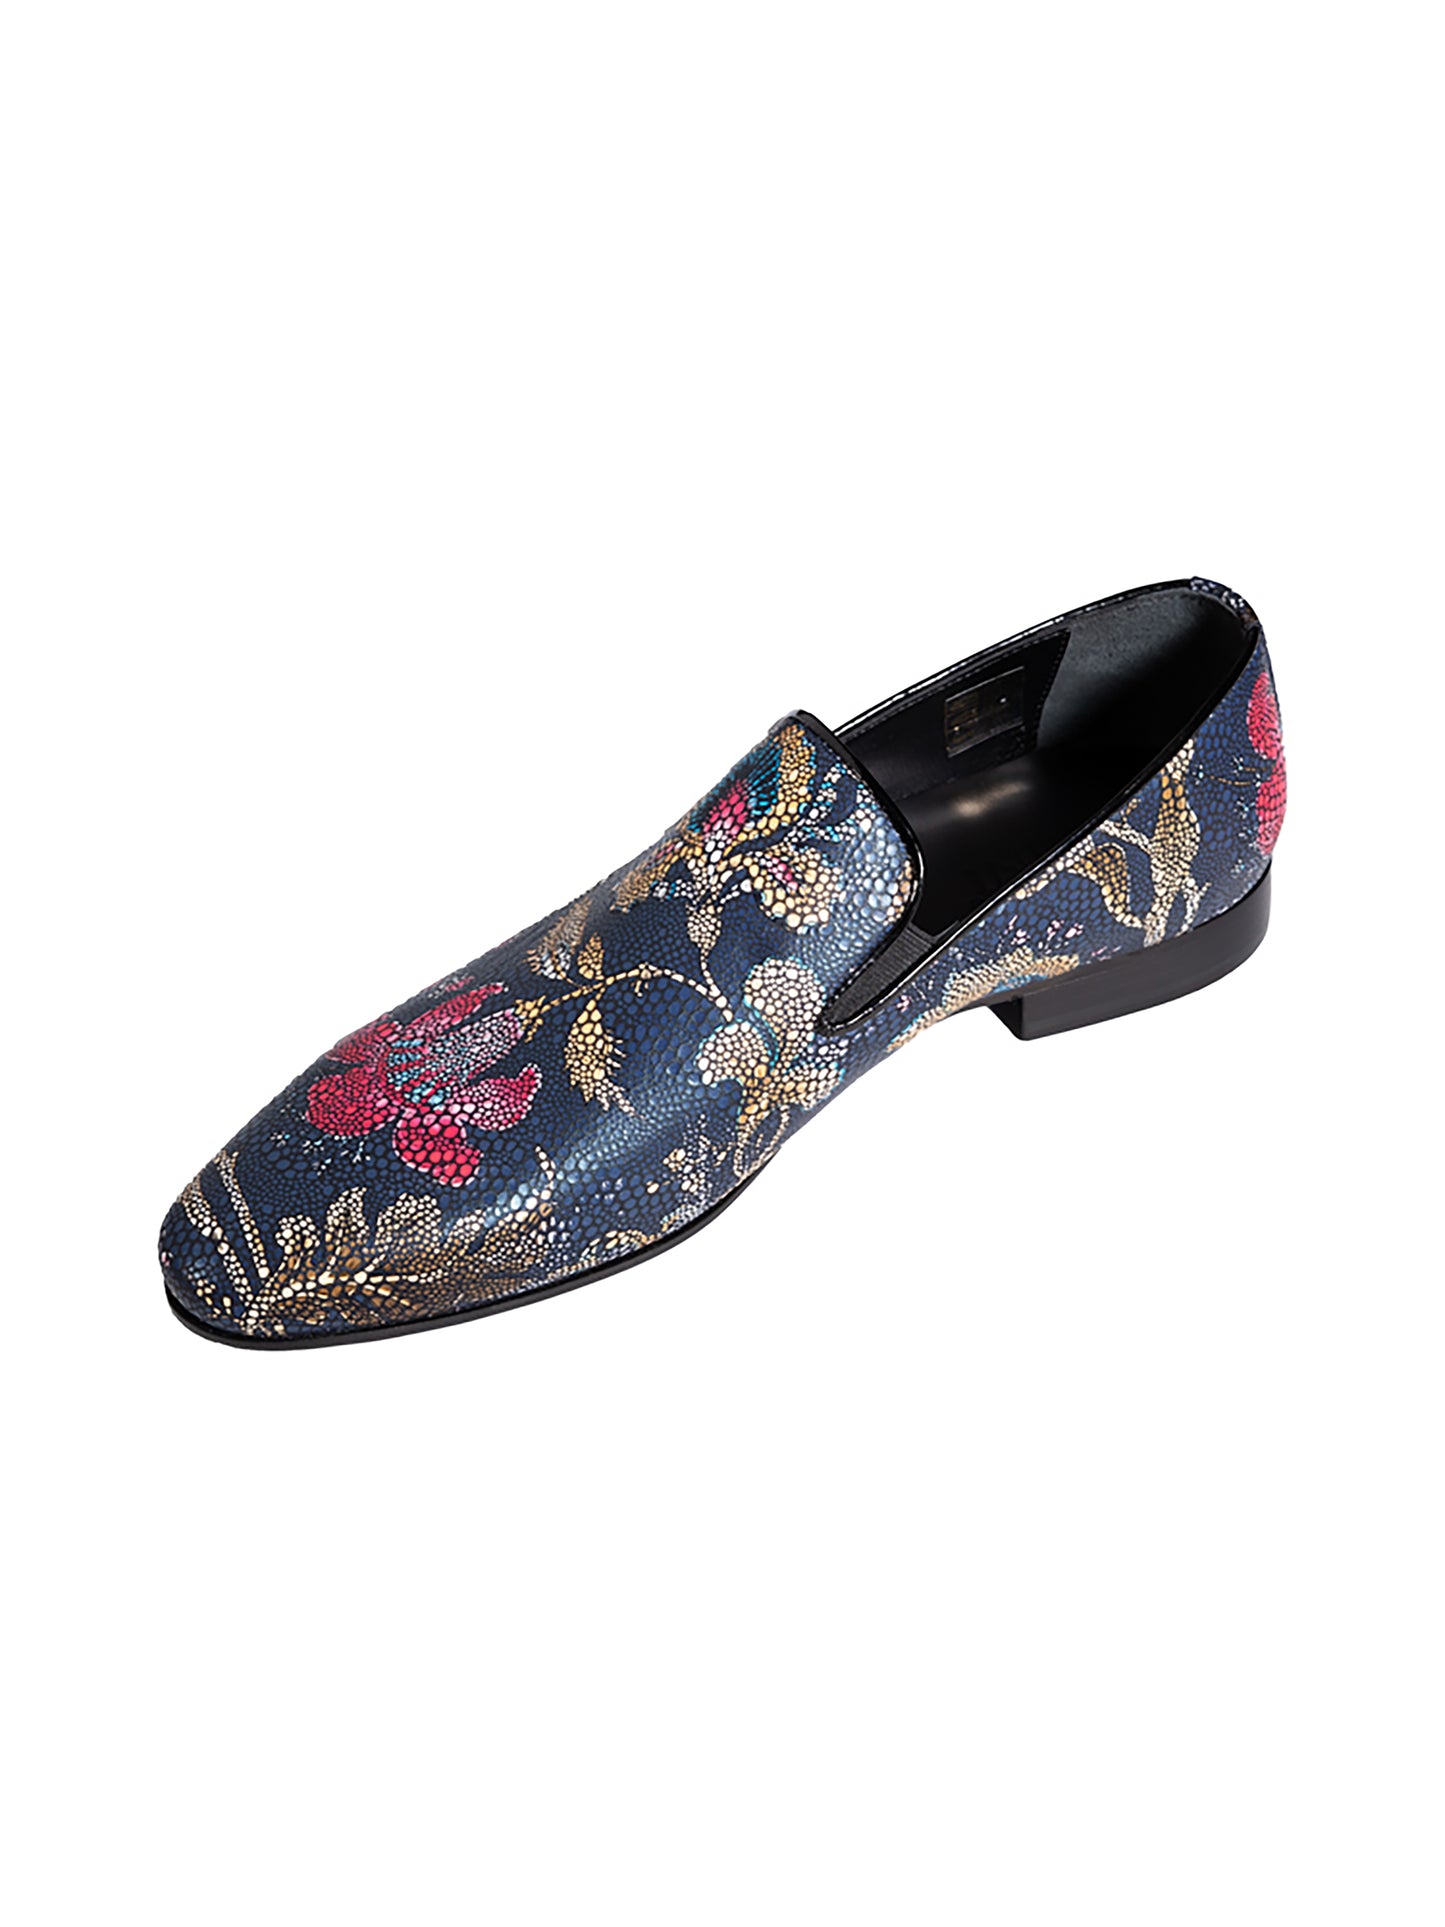 Floral blue shoes